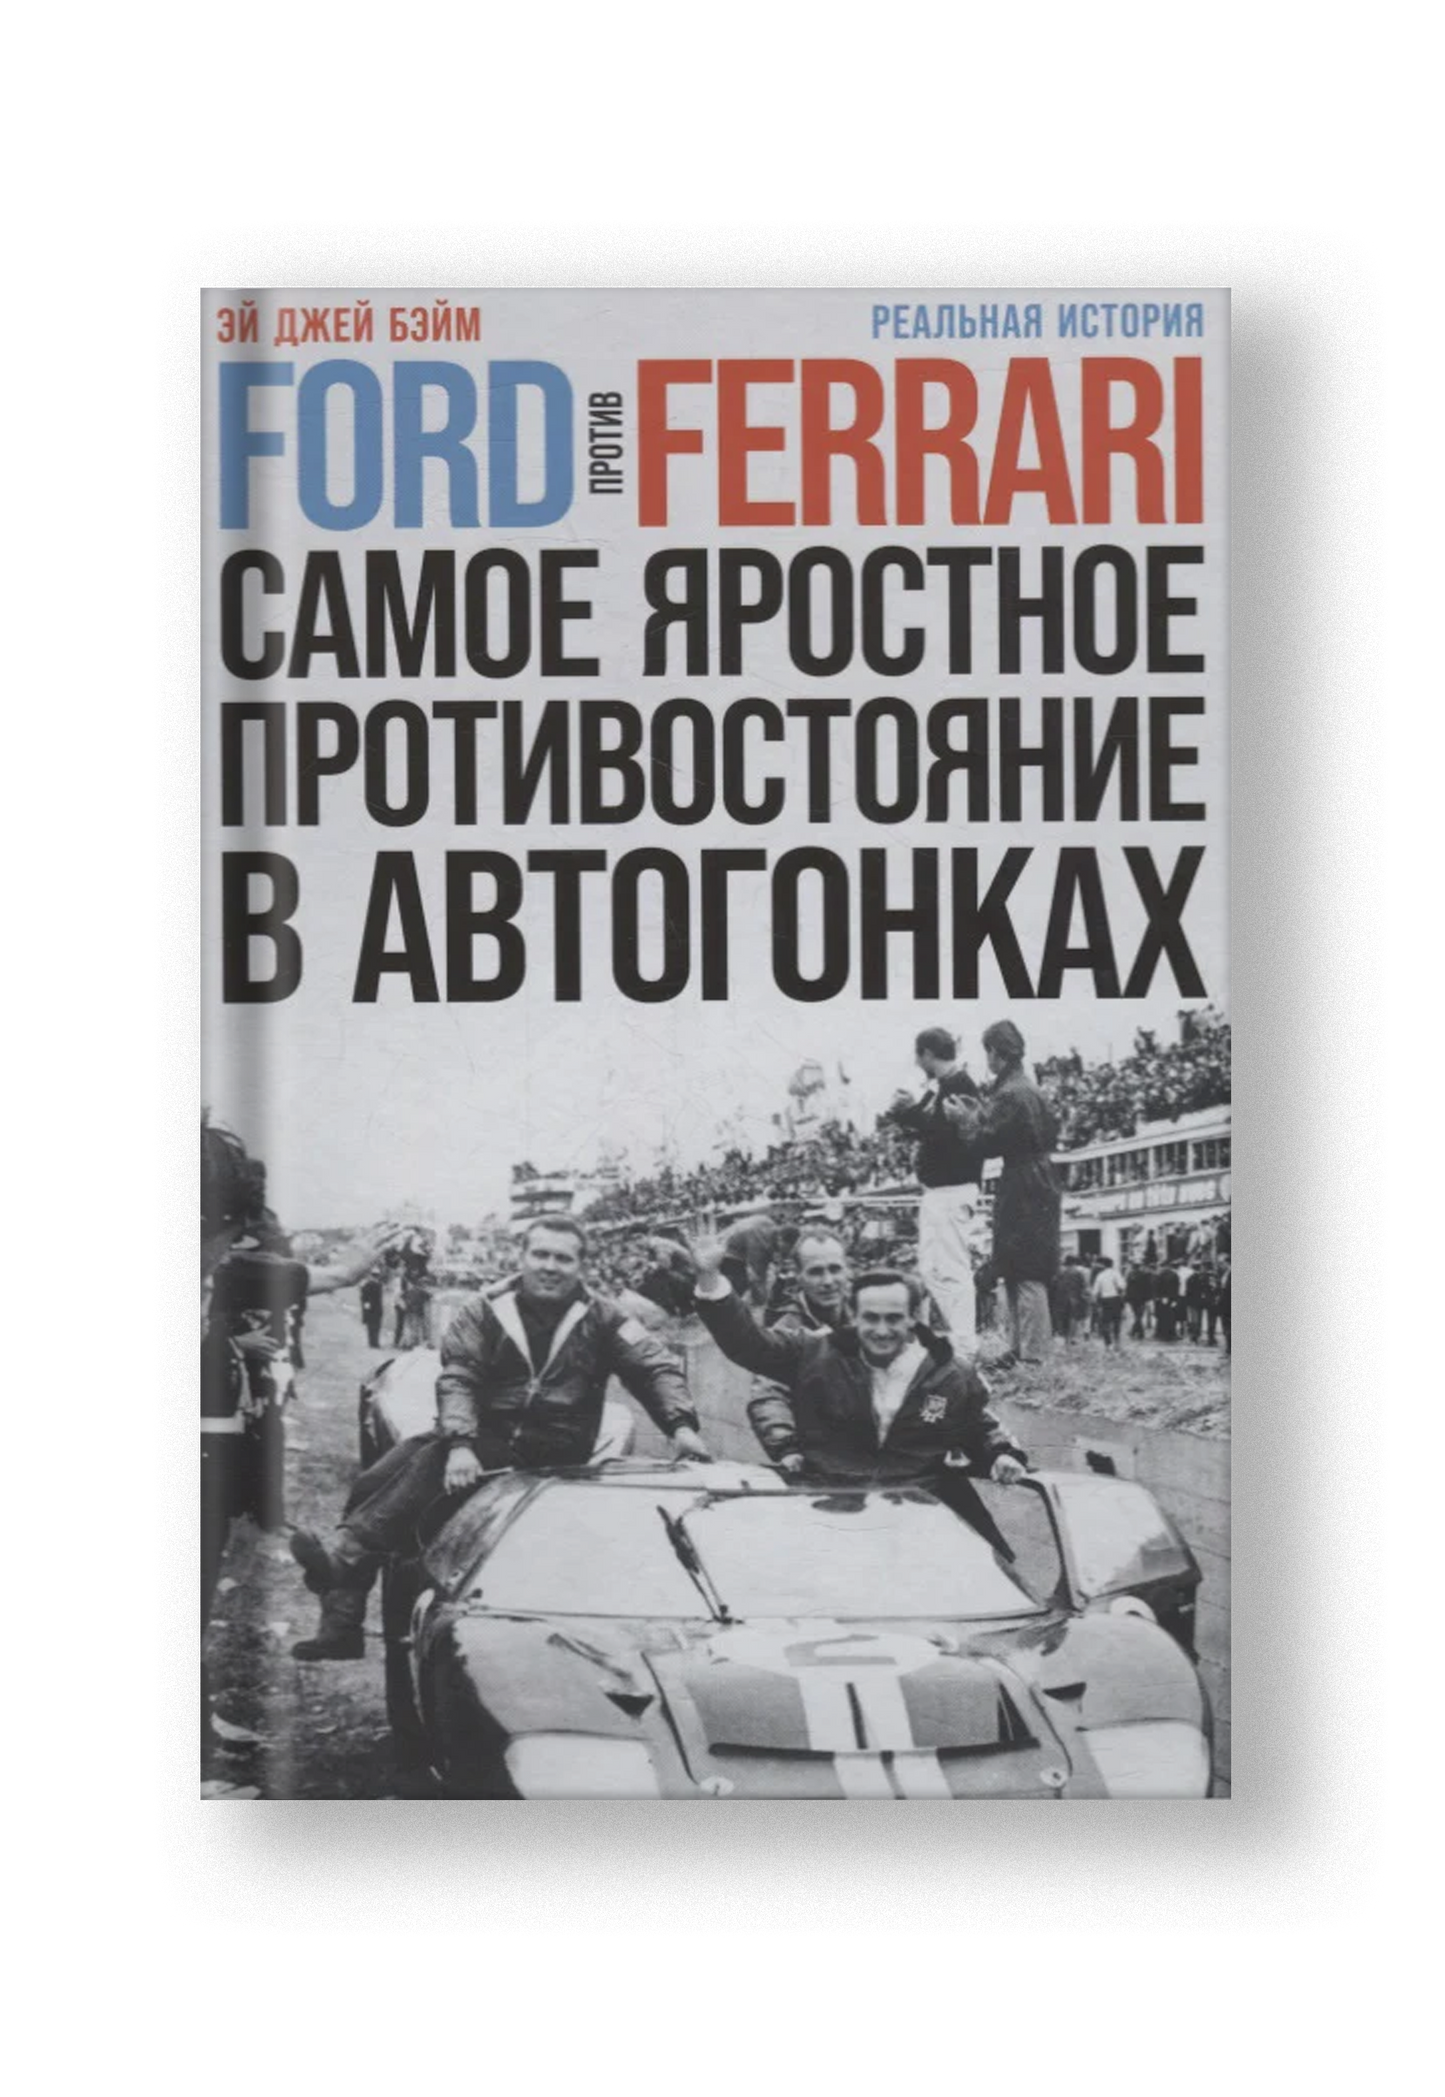 Ford против Ferrari: Cамое яростное противостояние в автогонках. Реальная история